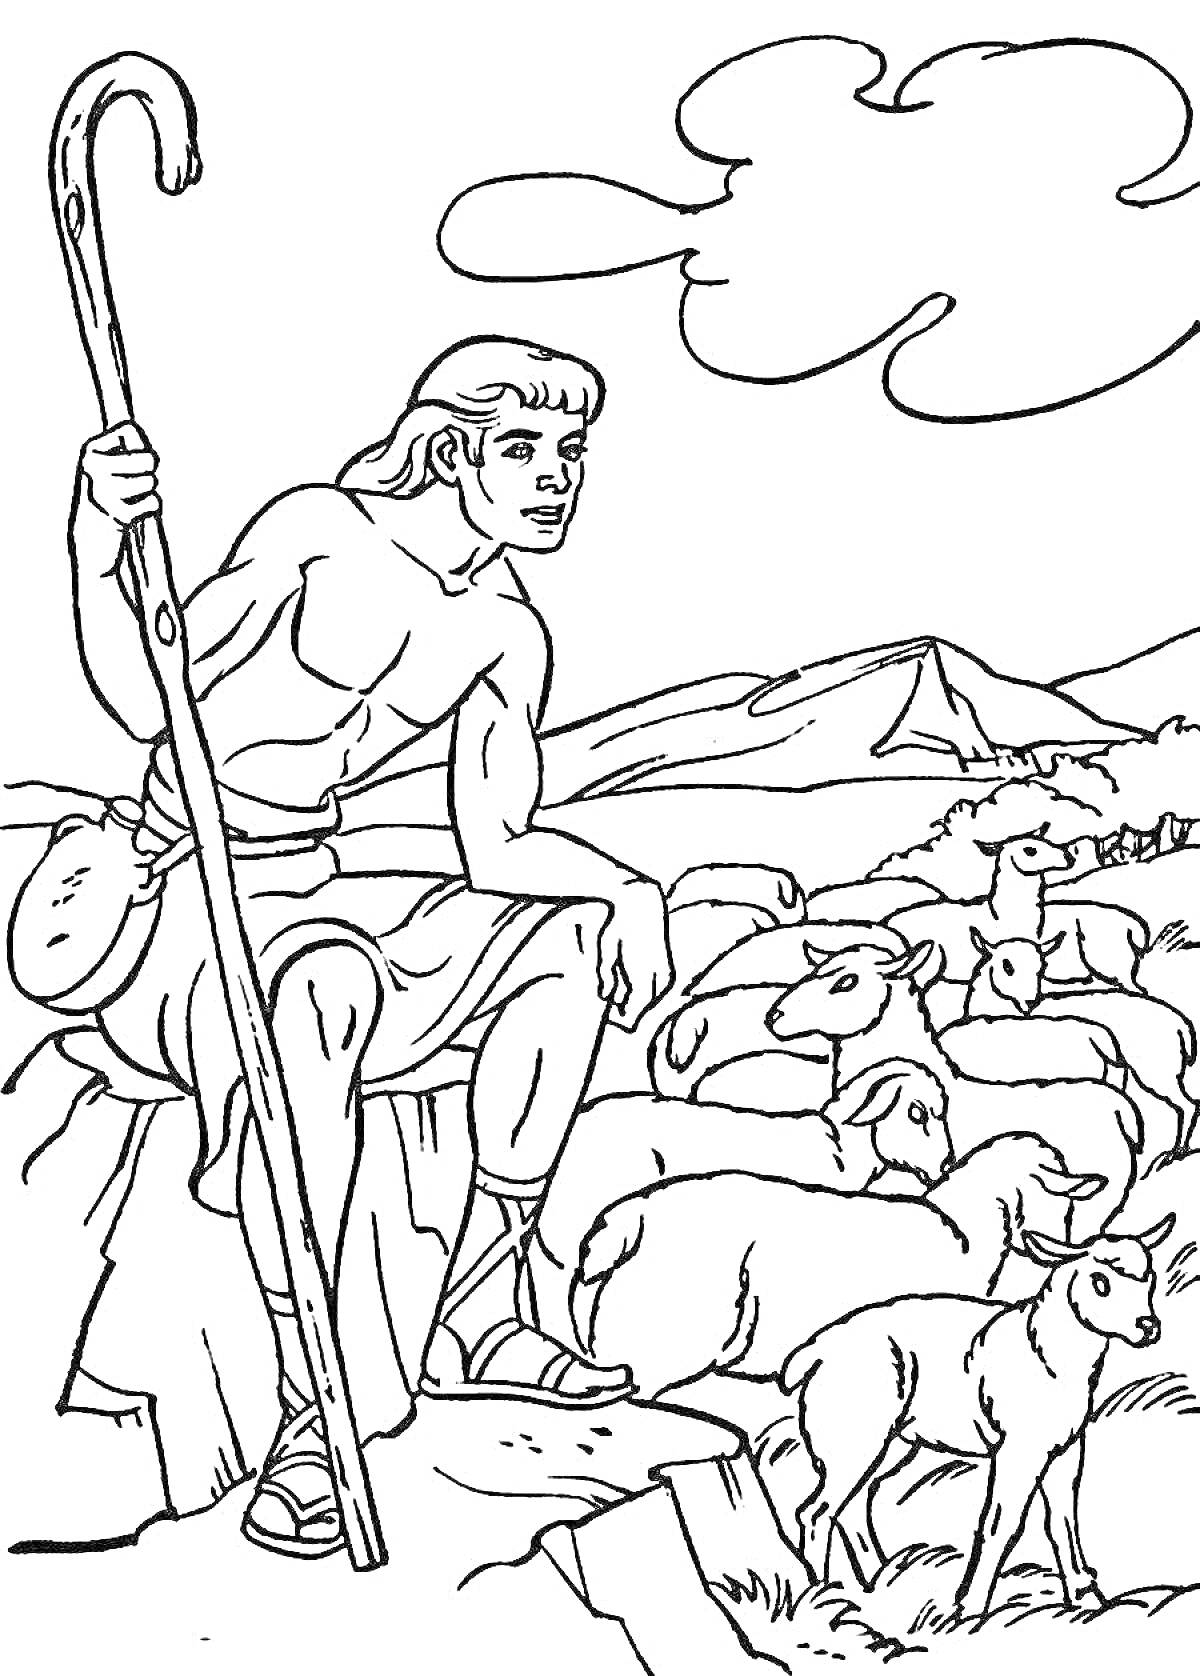 Раскраска Пастушок Лель с посохом сидит на камне среди овец в горах под облачным небом